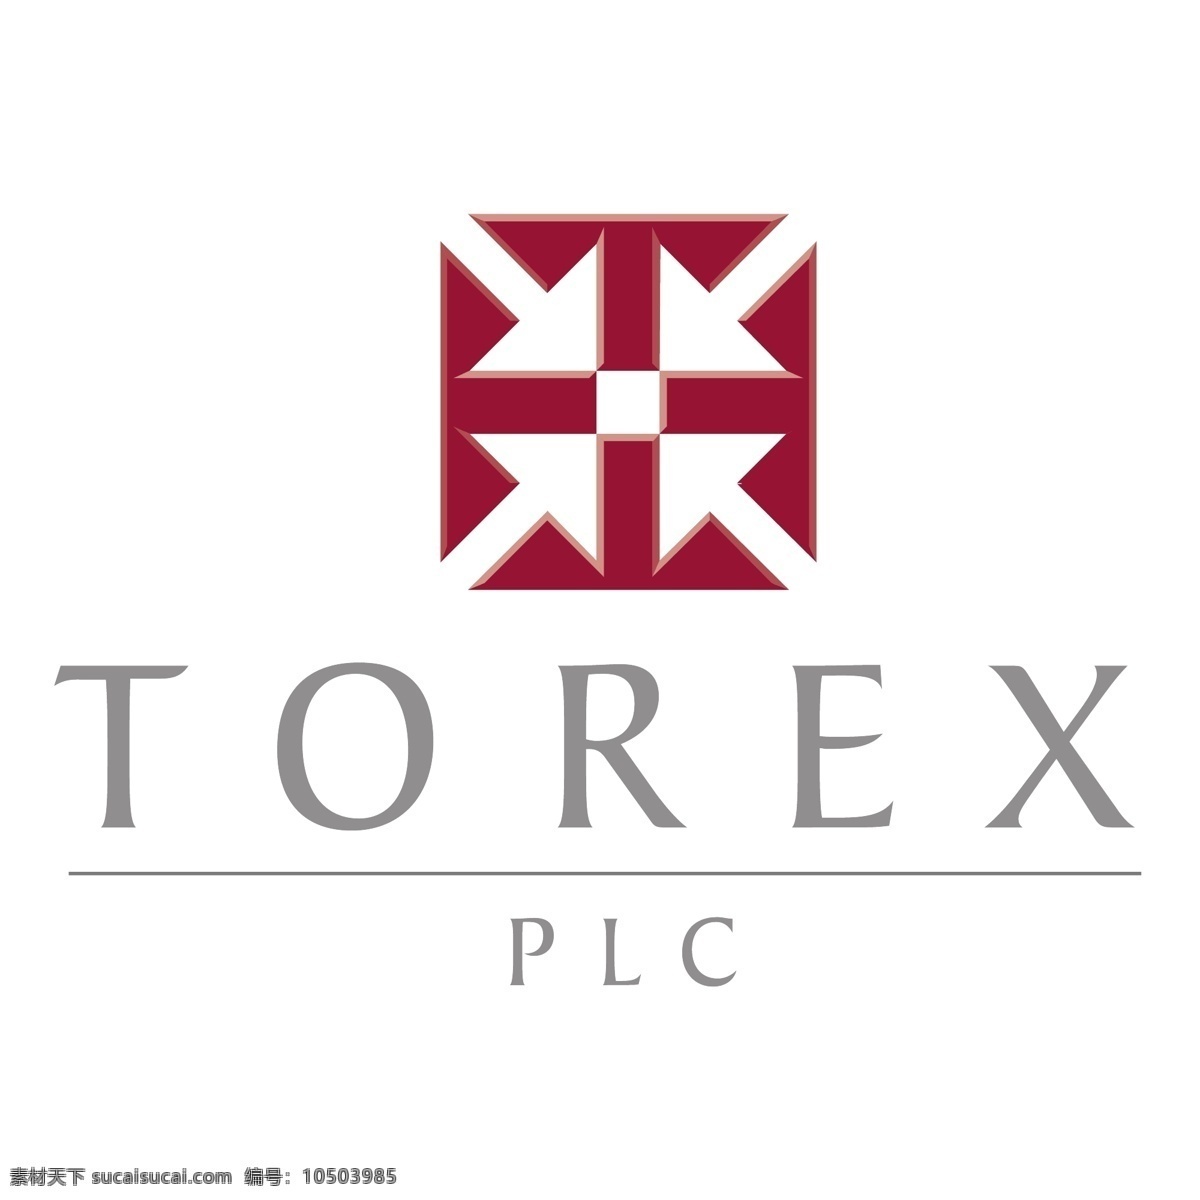 德州仪器 torex 标志 标识为免费 白色